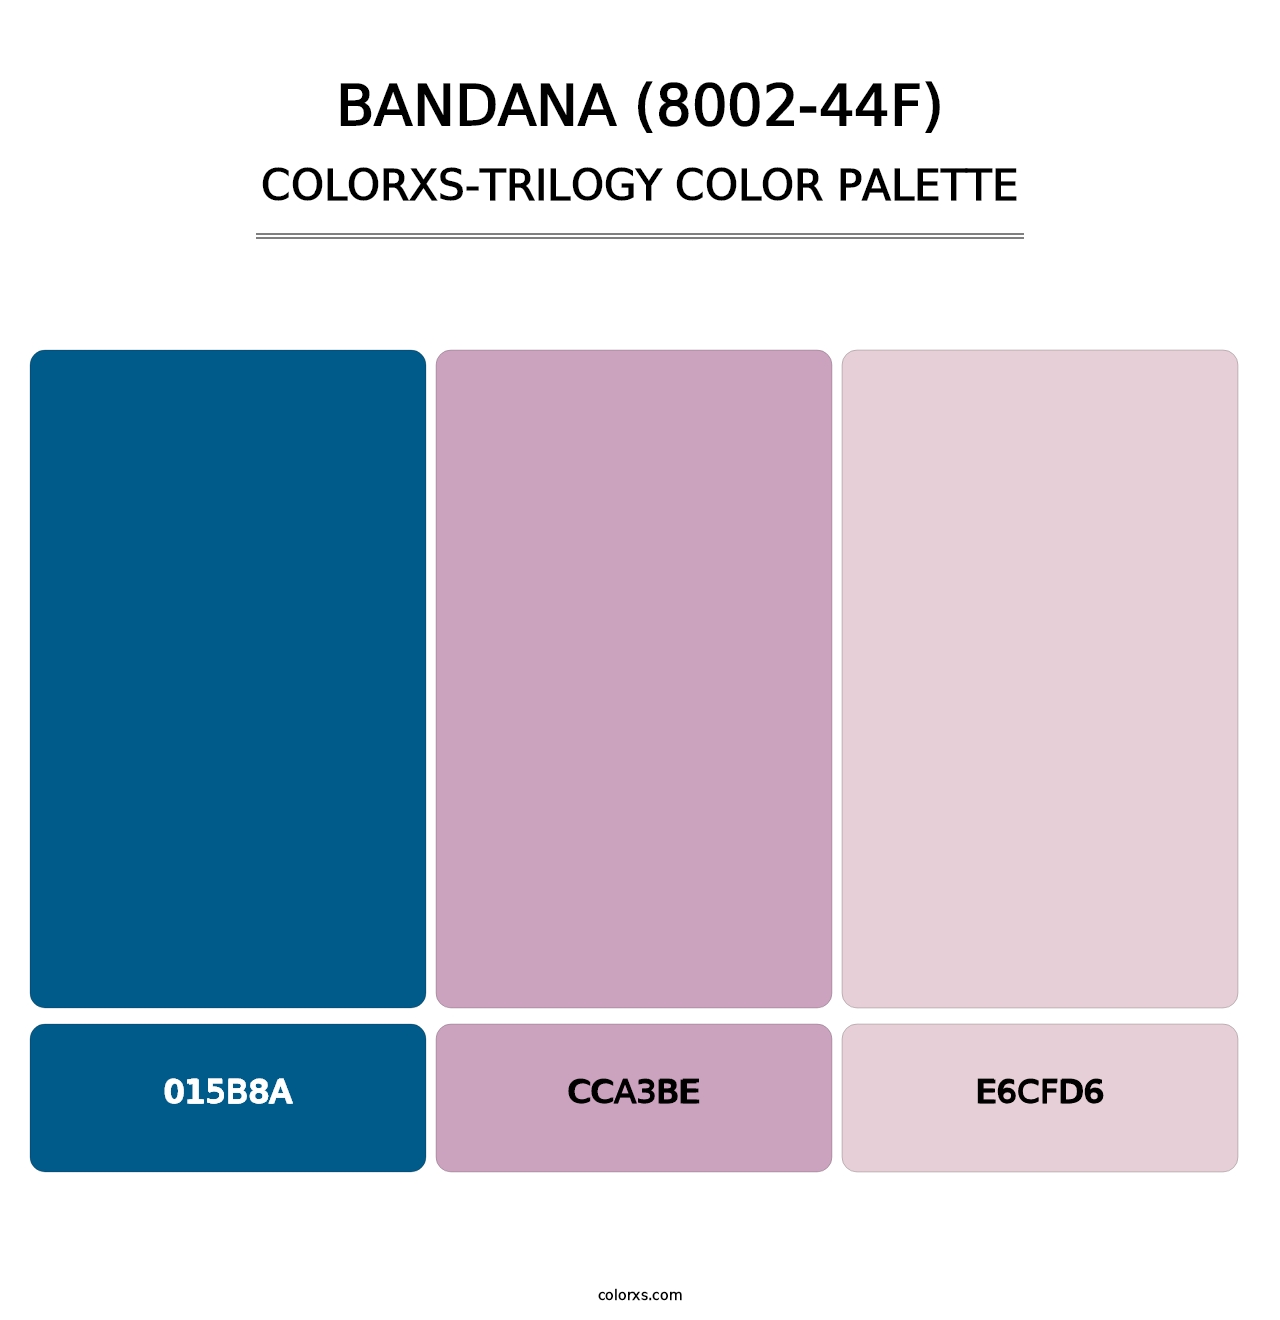 Bandana (8002-44F) - Colorxs Trilogy Palette